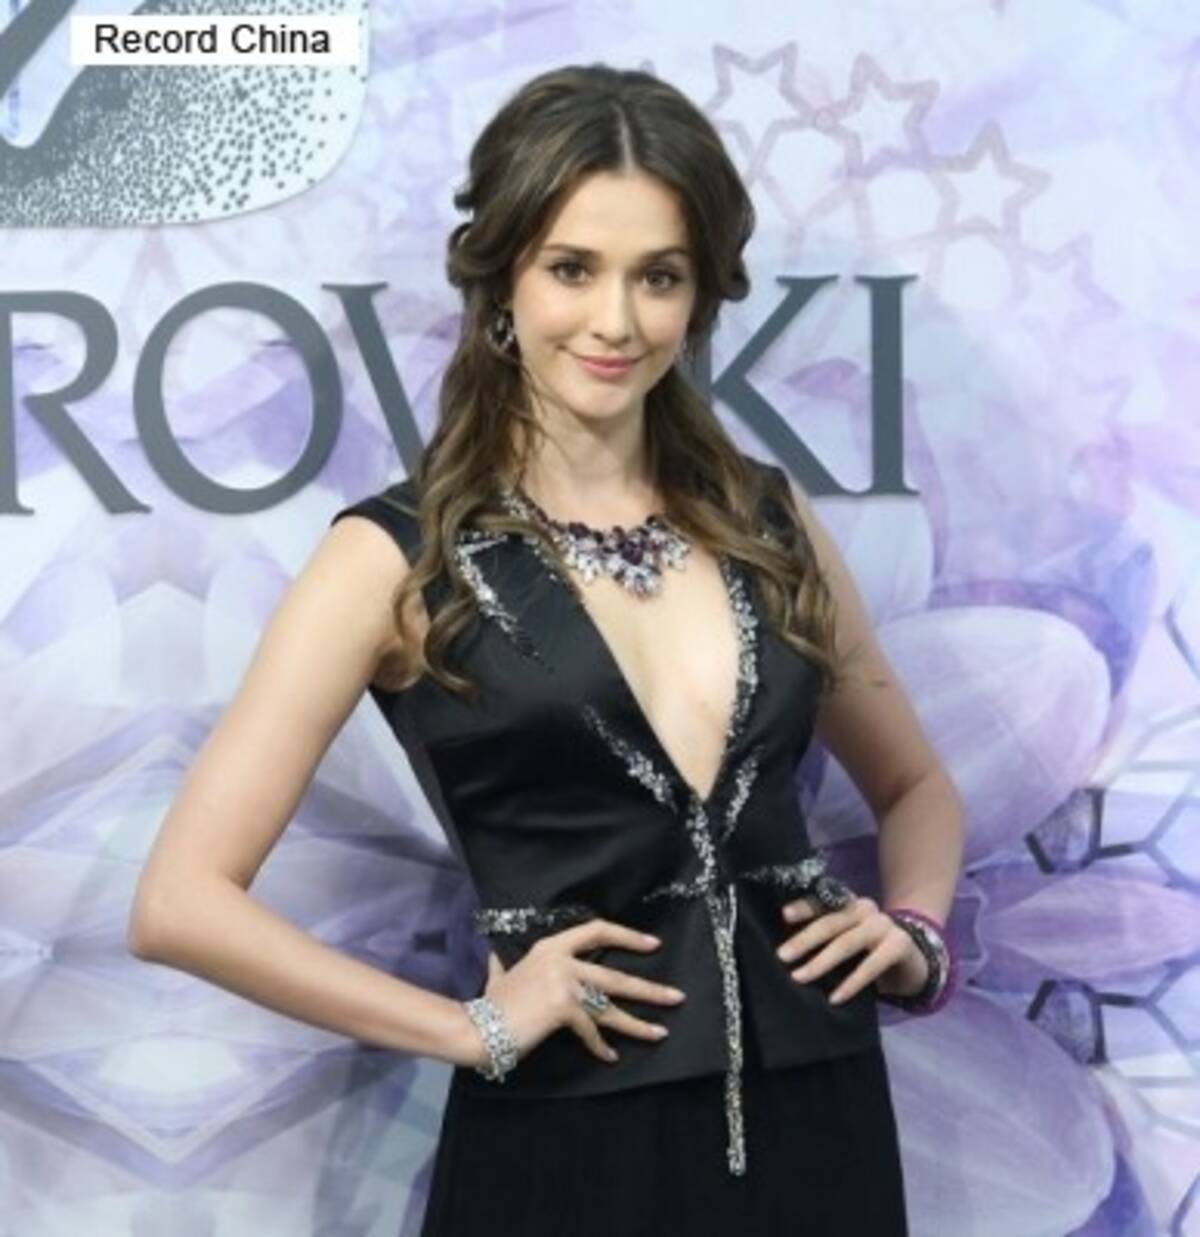 ネットユーザーが選ぶ ハーフ美女 ランキング ウクライナ美女 Larisaが1位 台湾 16年3月12日 エキサイトニュース